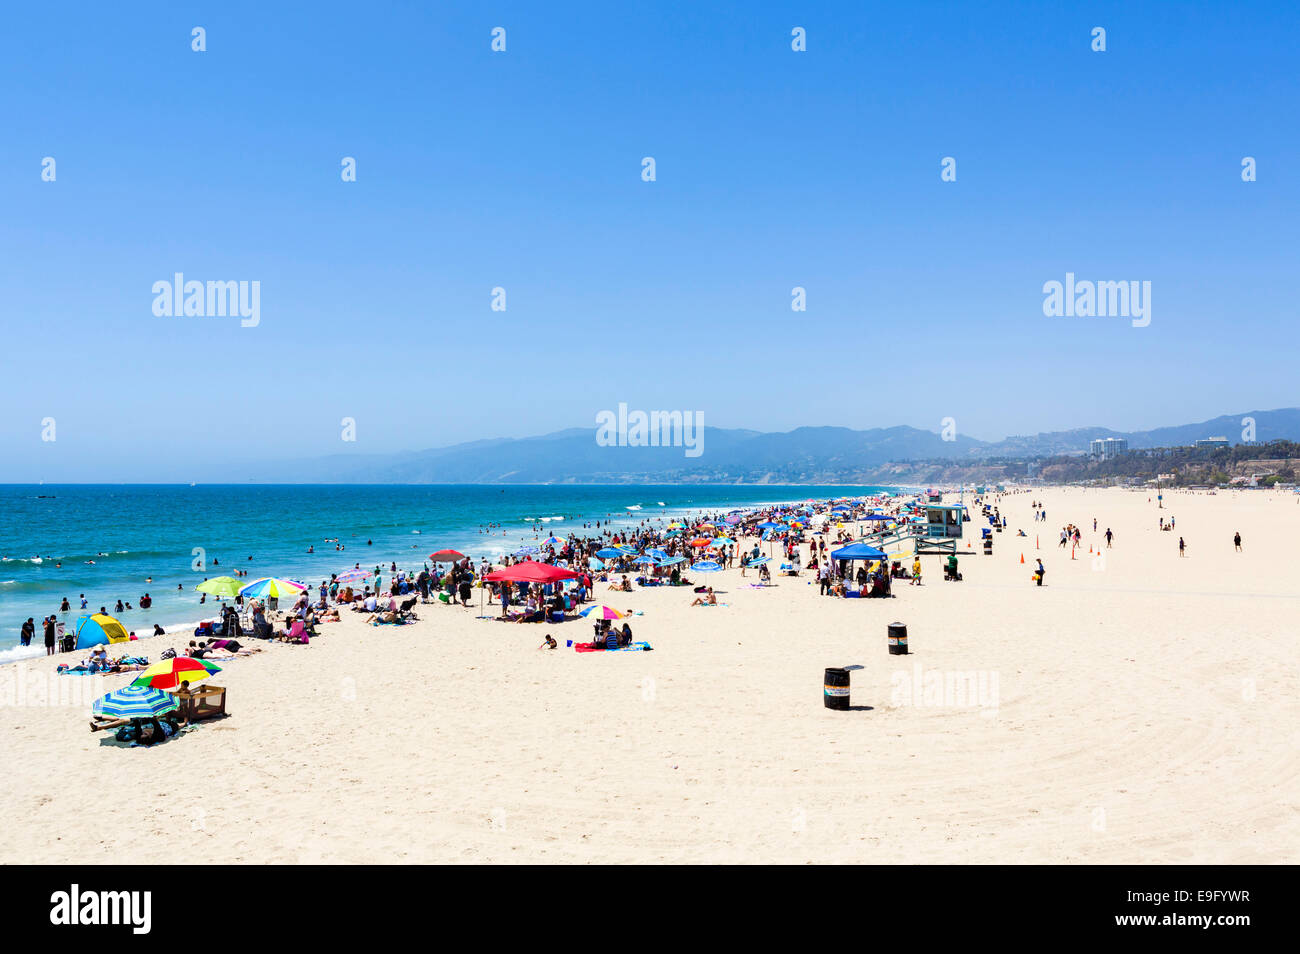 La spiaggia di Santa Monica visto dal molo, Los Angeles, California, Stati Uniti d'America Foto Stock